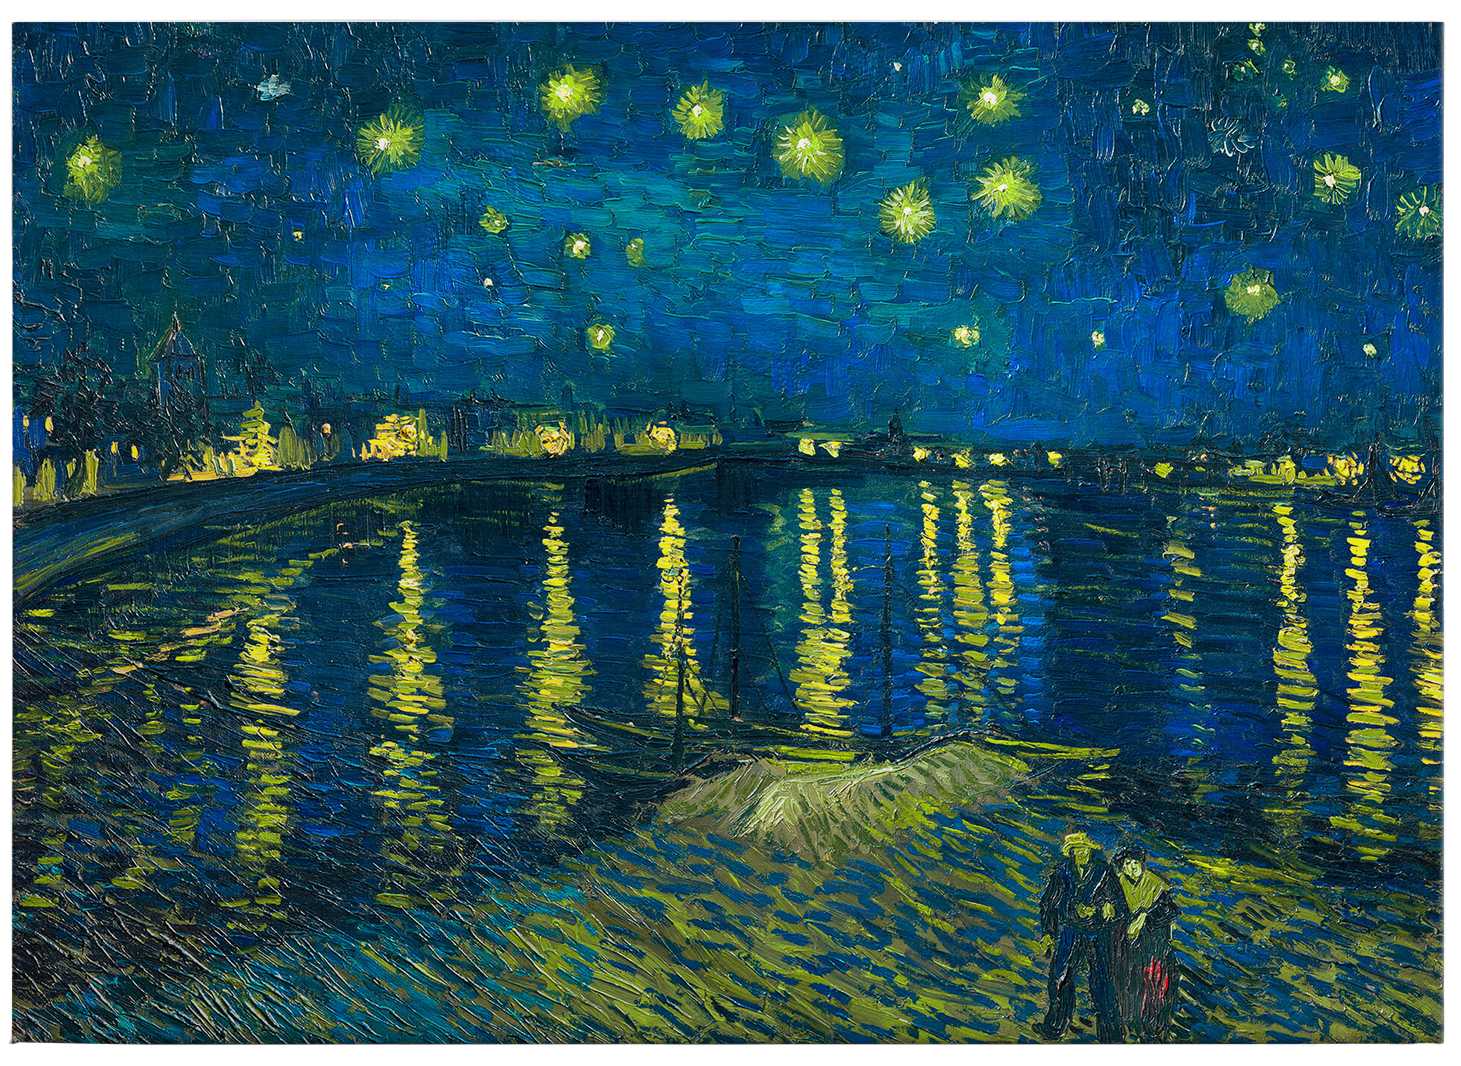             Leinwandbild "Sternennacht" von Van Gogh – 0,70 m x 0,50 m
        